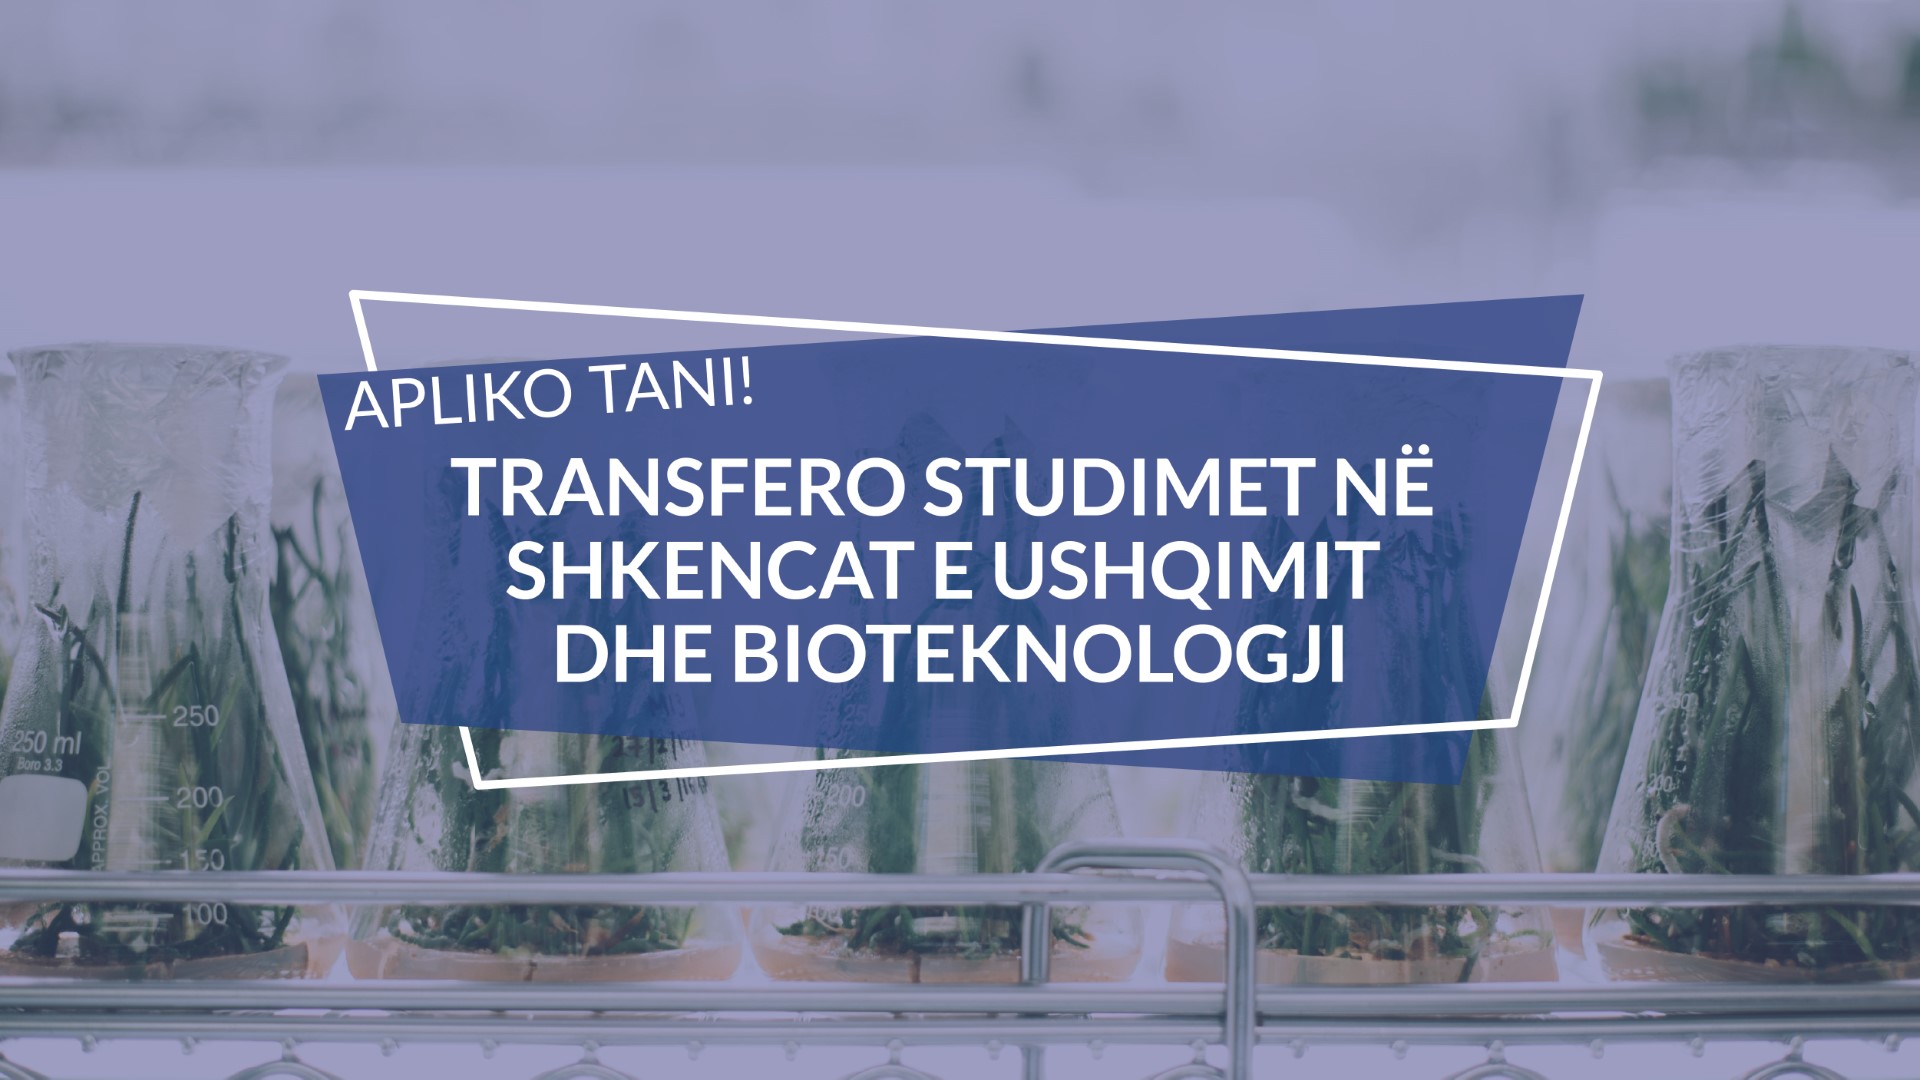 Bëhu profesionist i industrisë së bioteknologjisë ushqimore duke transferuar studimet në UBT